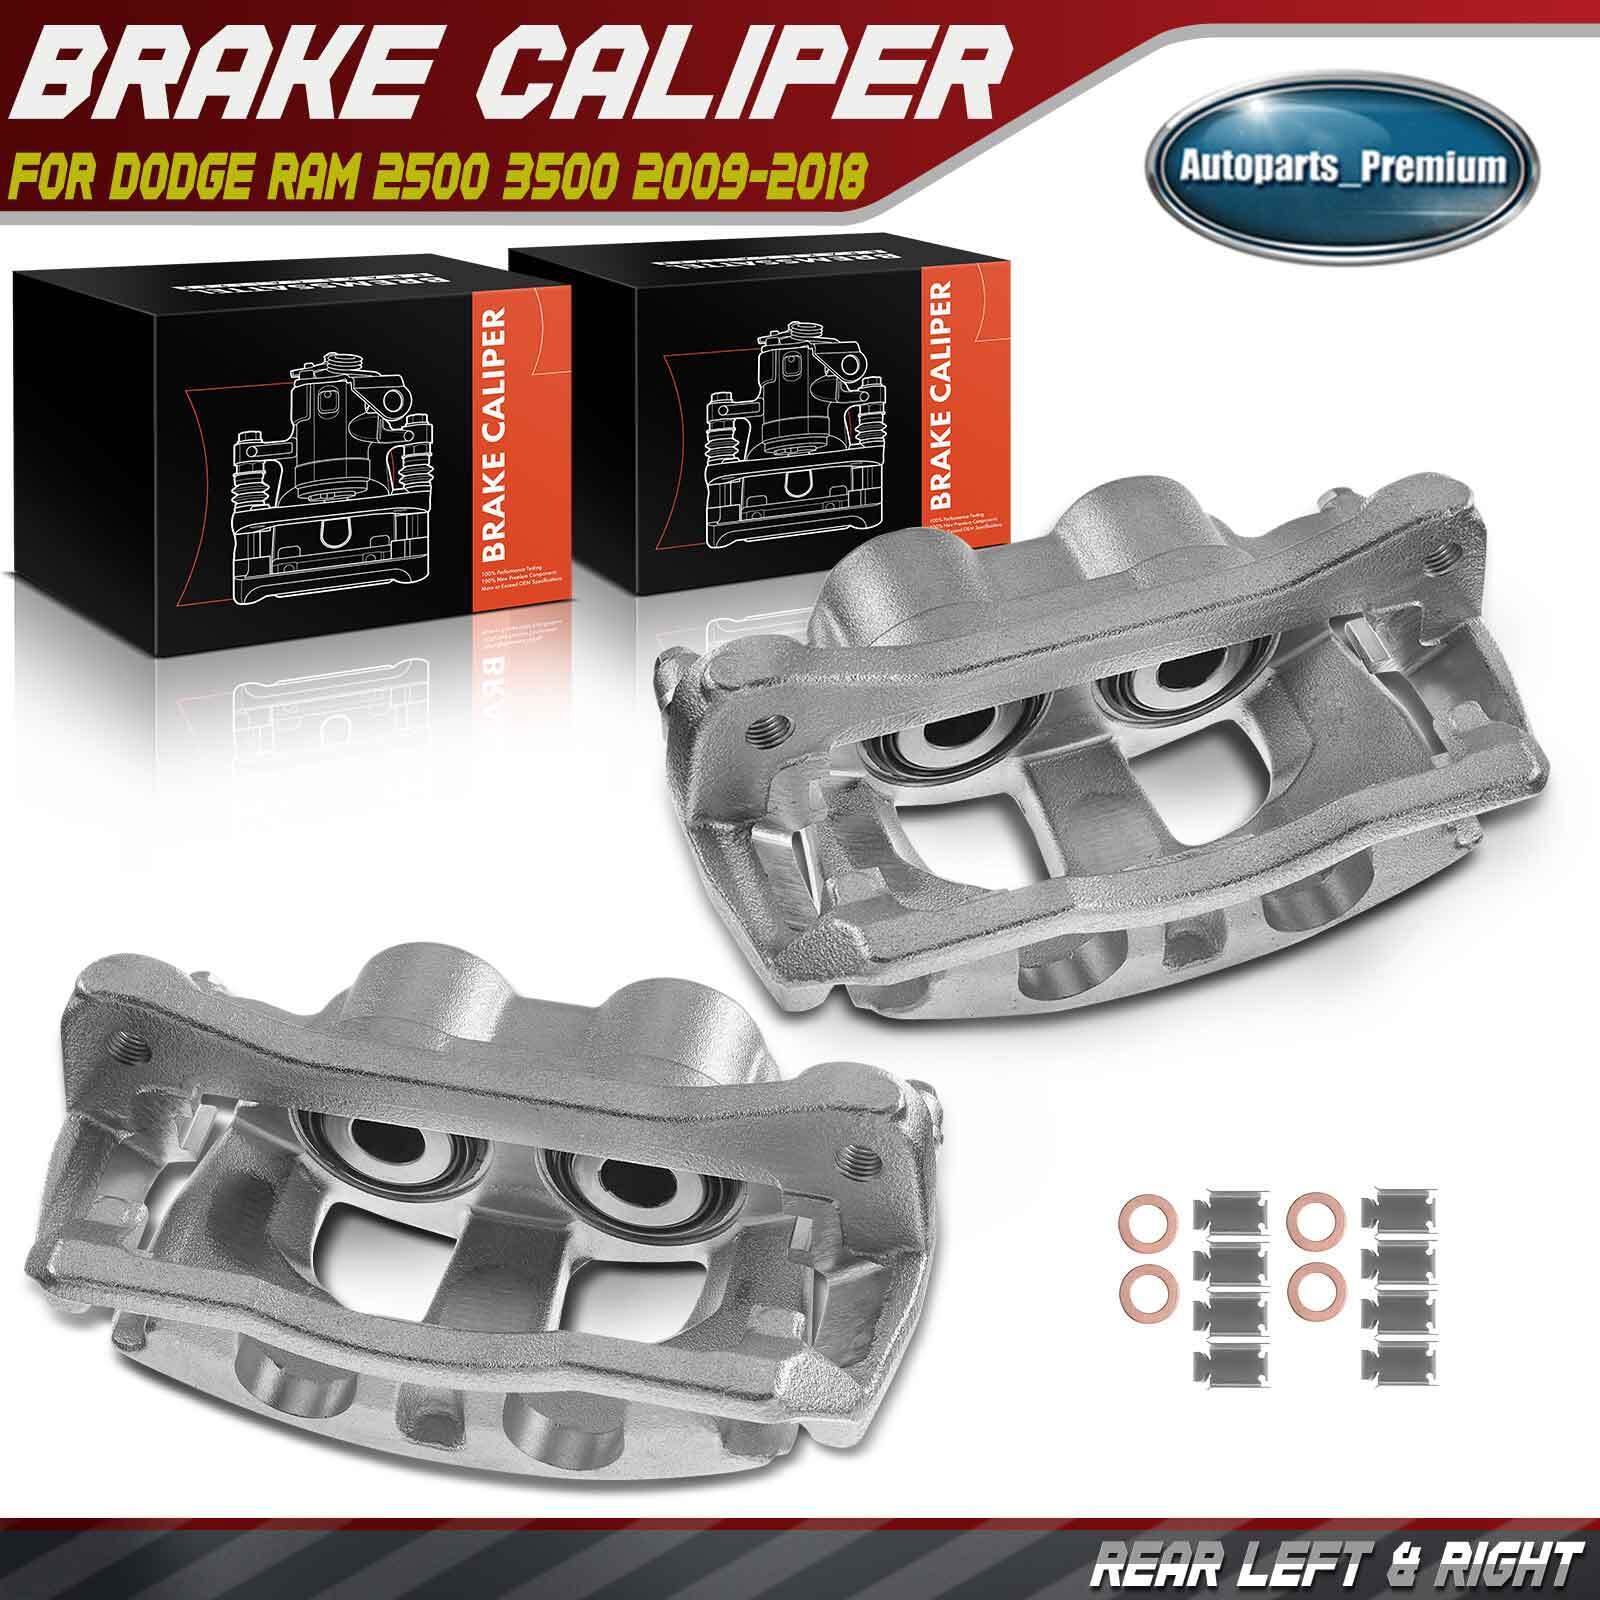 2x Brake Caliper with Bracket for Dodge Ram 2500 3500 Pickup Rear Left & Right